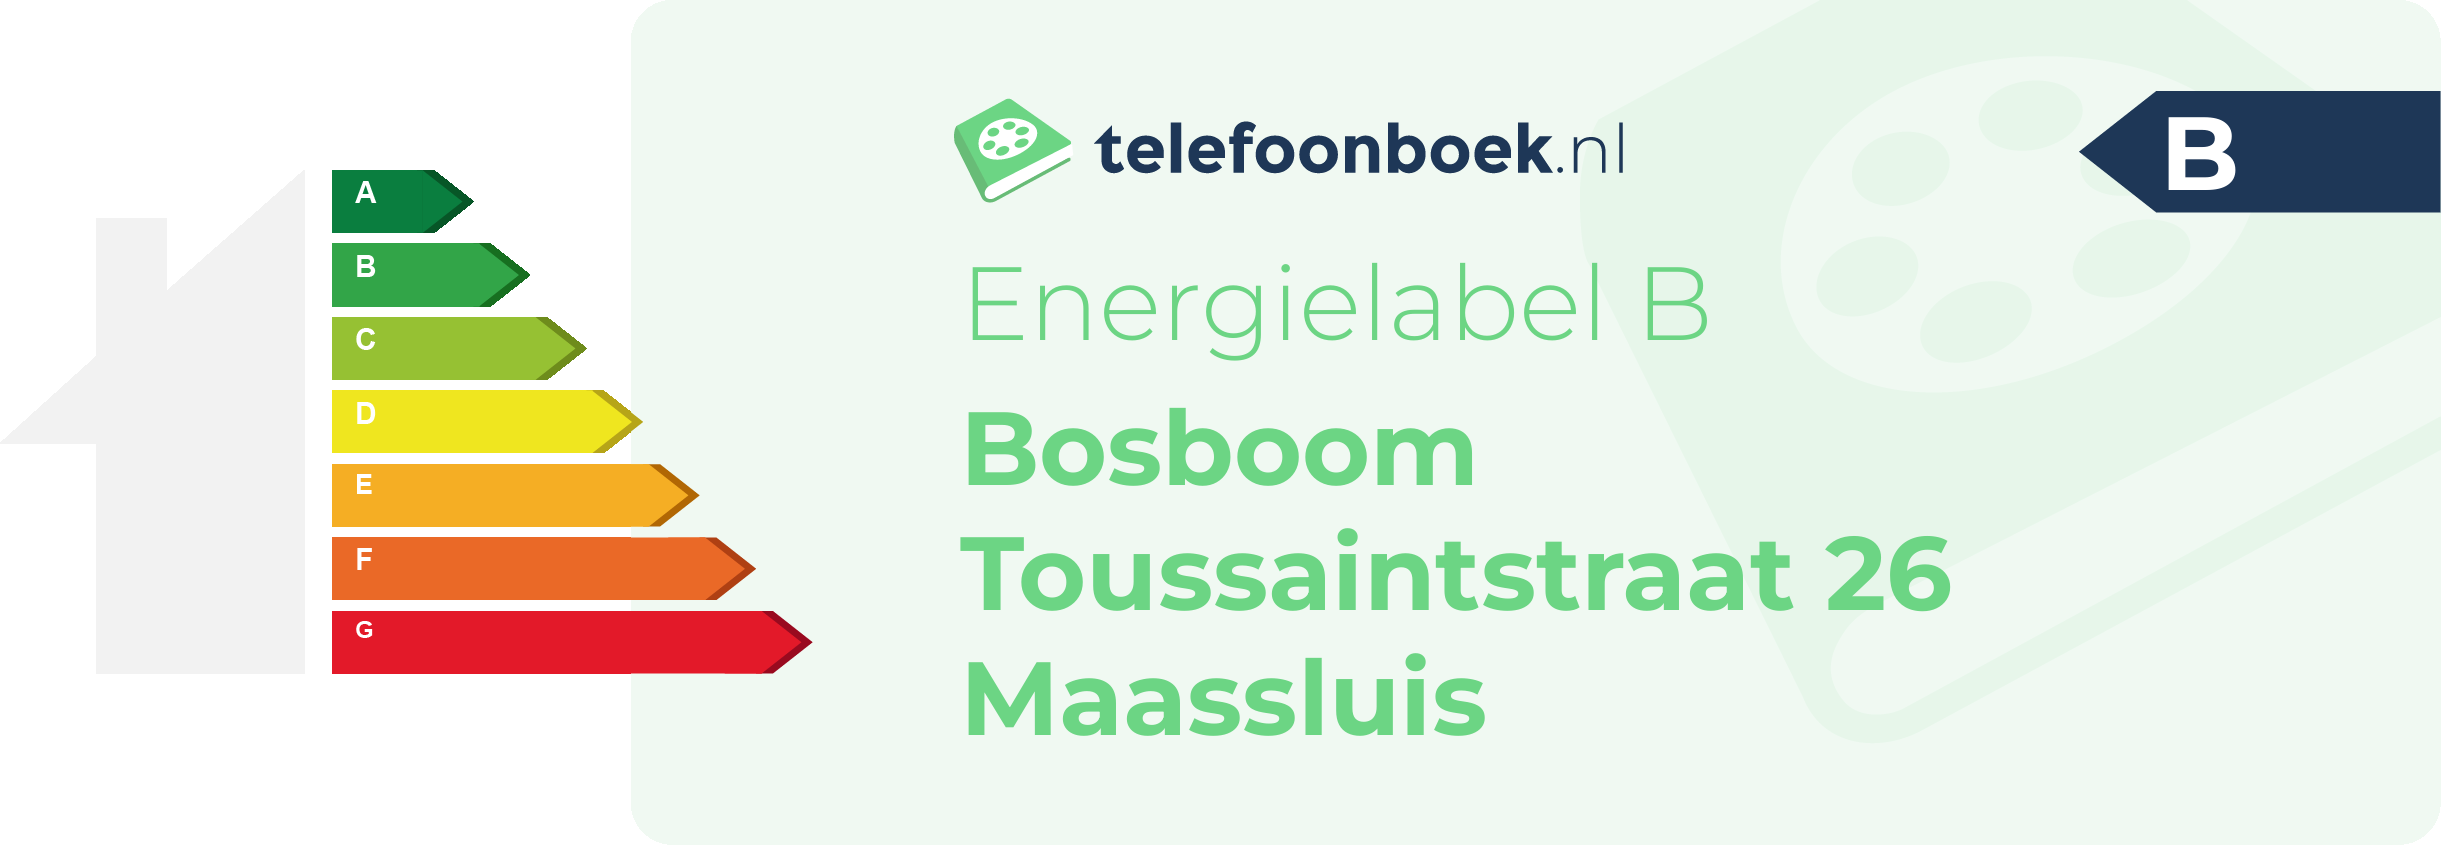 Energielabel Bosboom Toussaintstraat 26 Maassluis